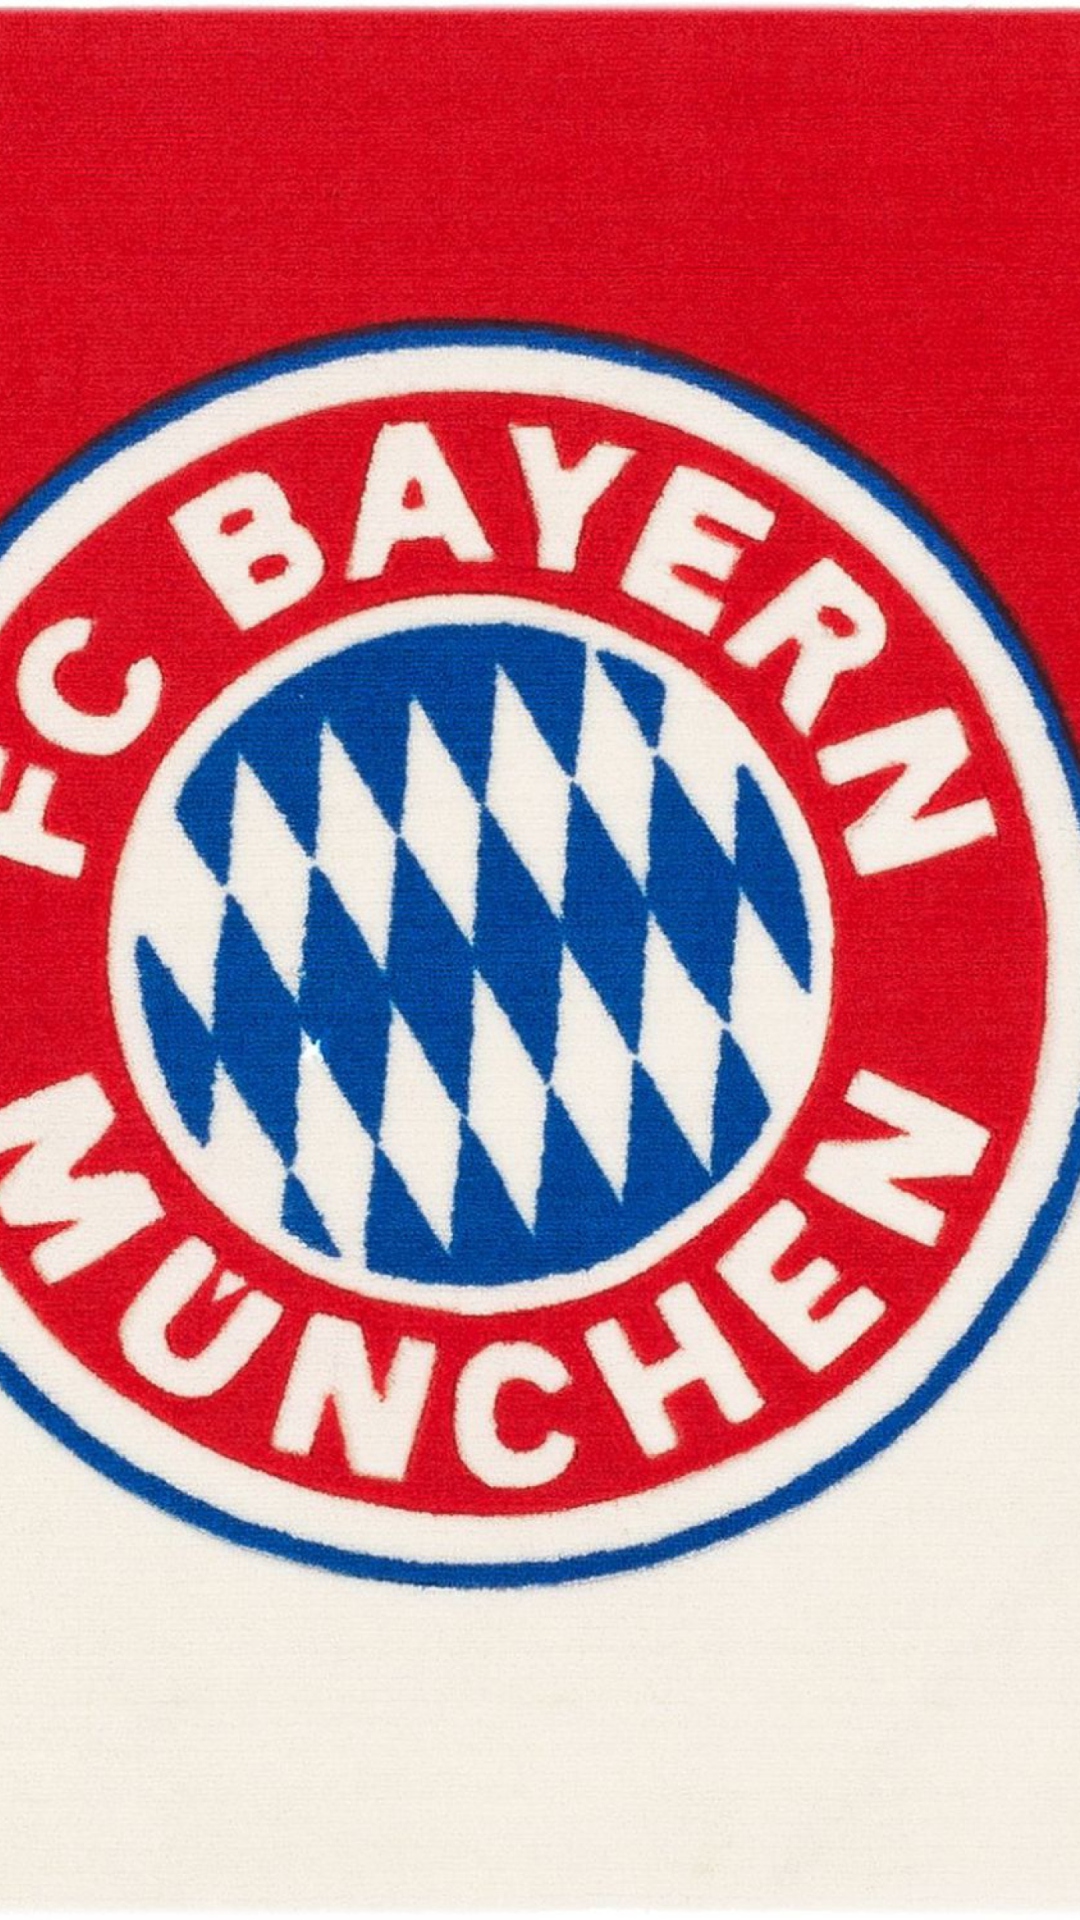 Das Fc Bayern Munchen Wallpaper 1080x1920